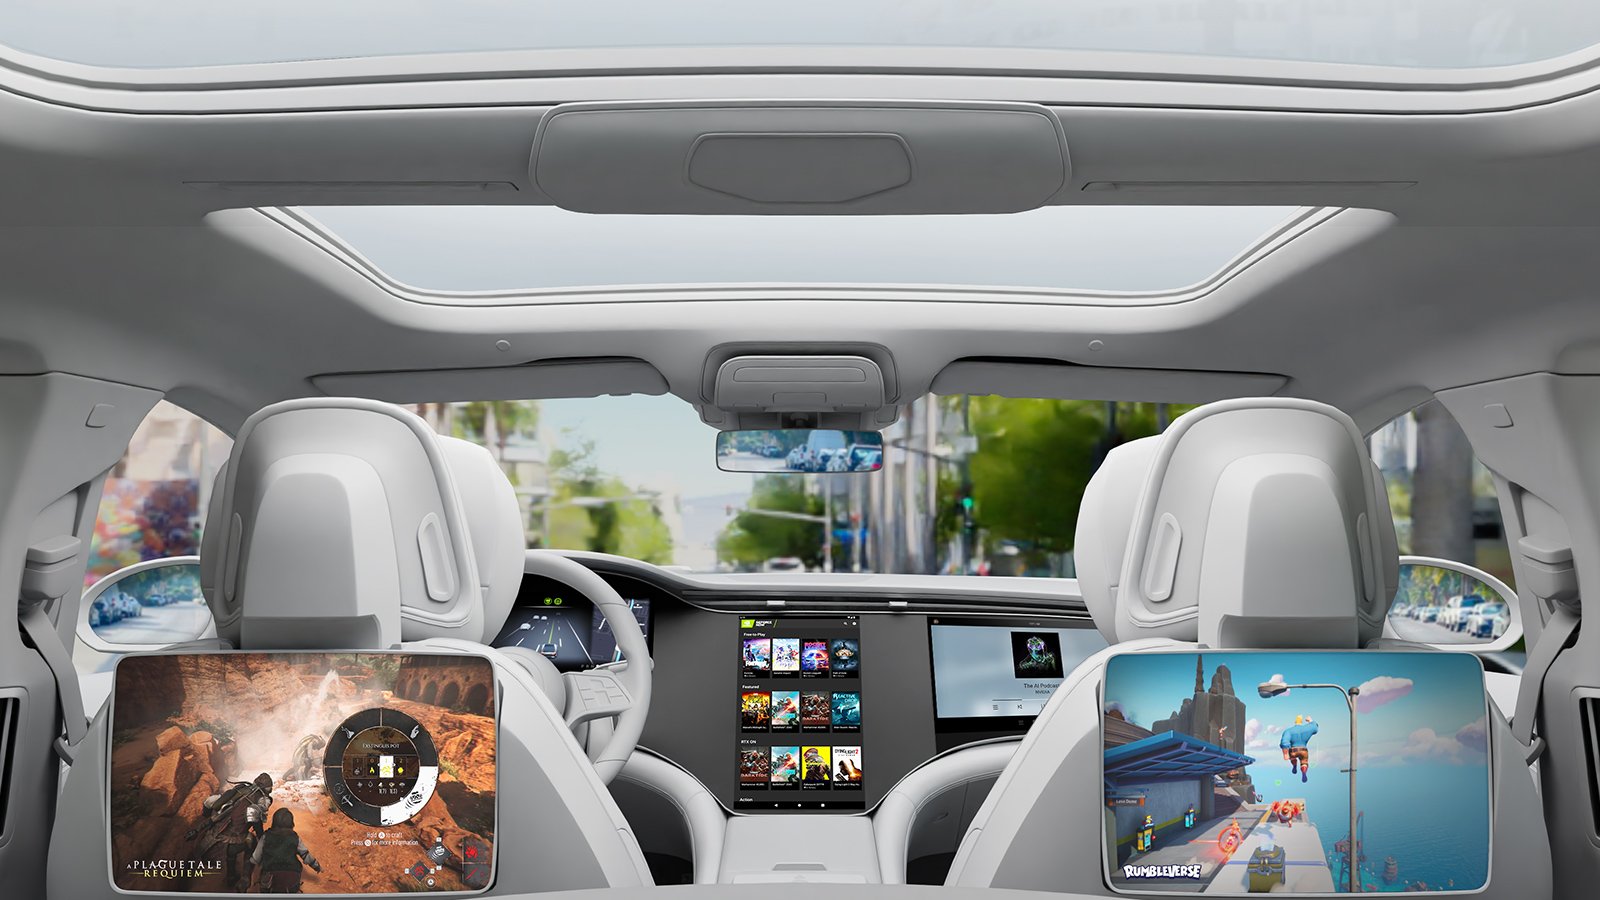 Con esta tecnología tu auto podrá ser una sala de videojuegos móvil